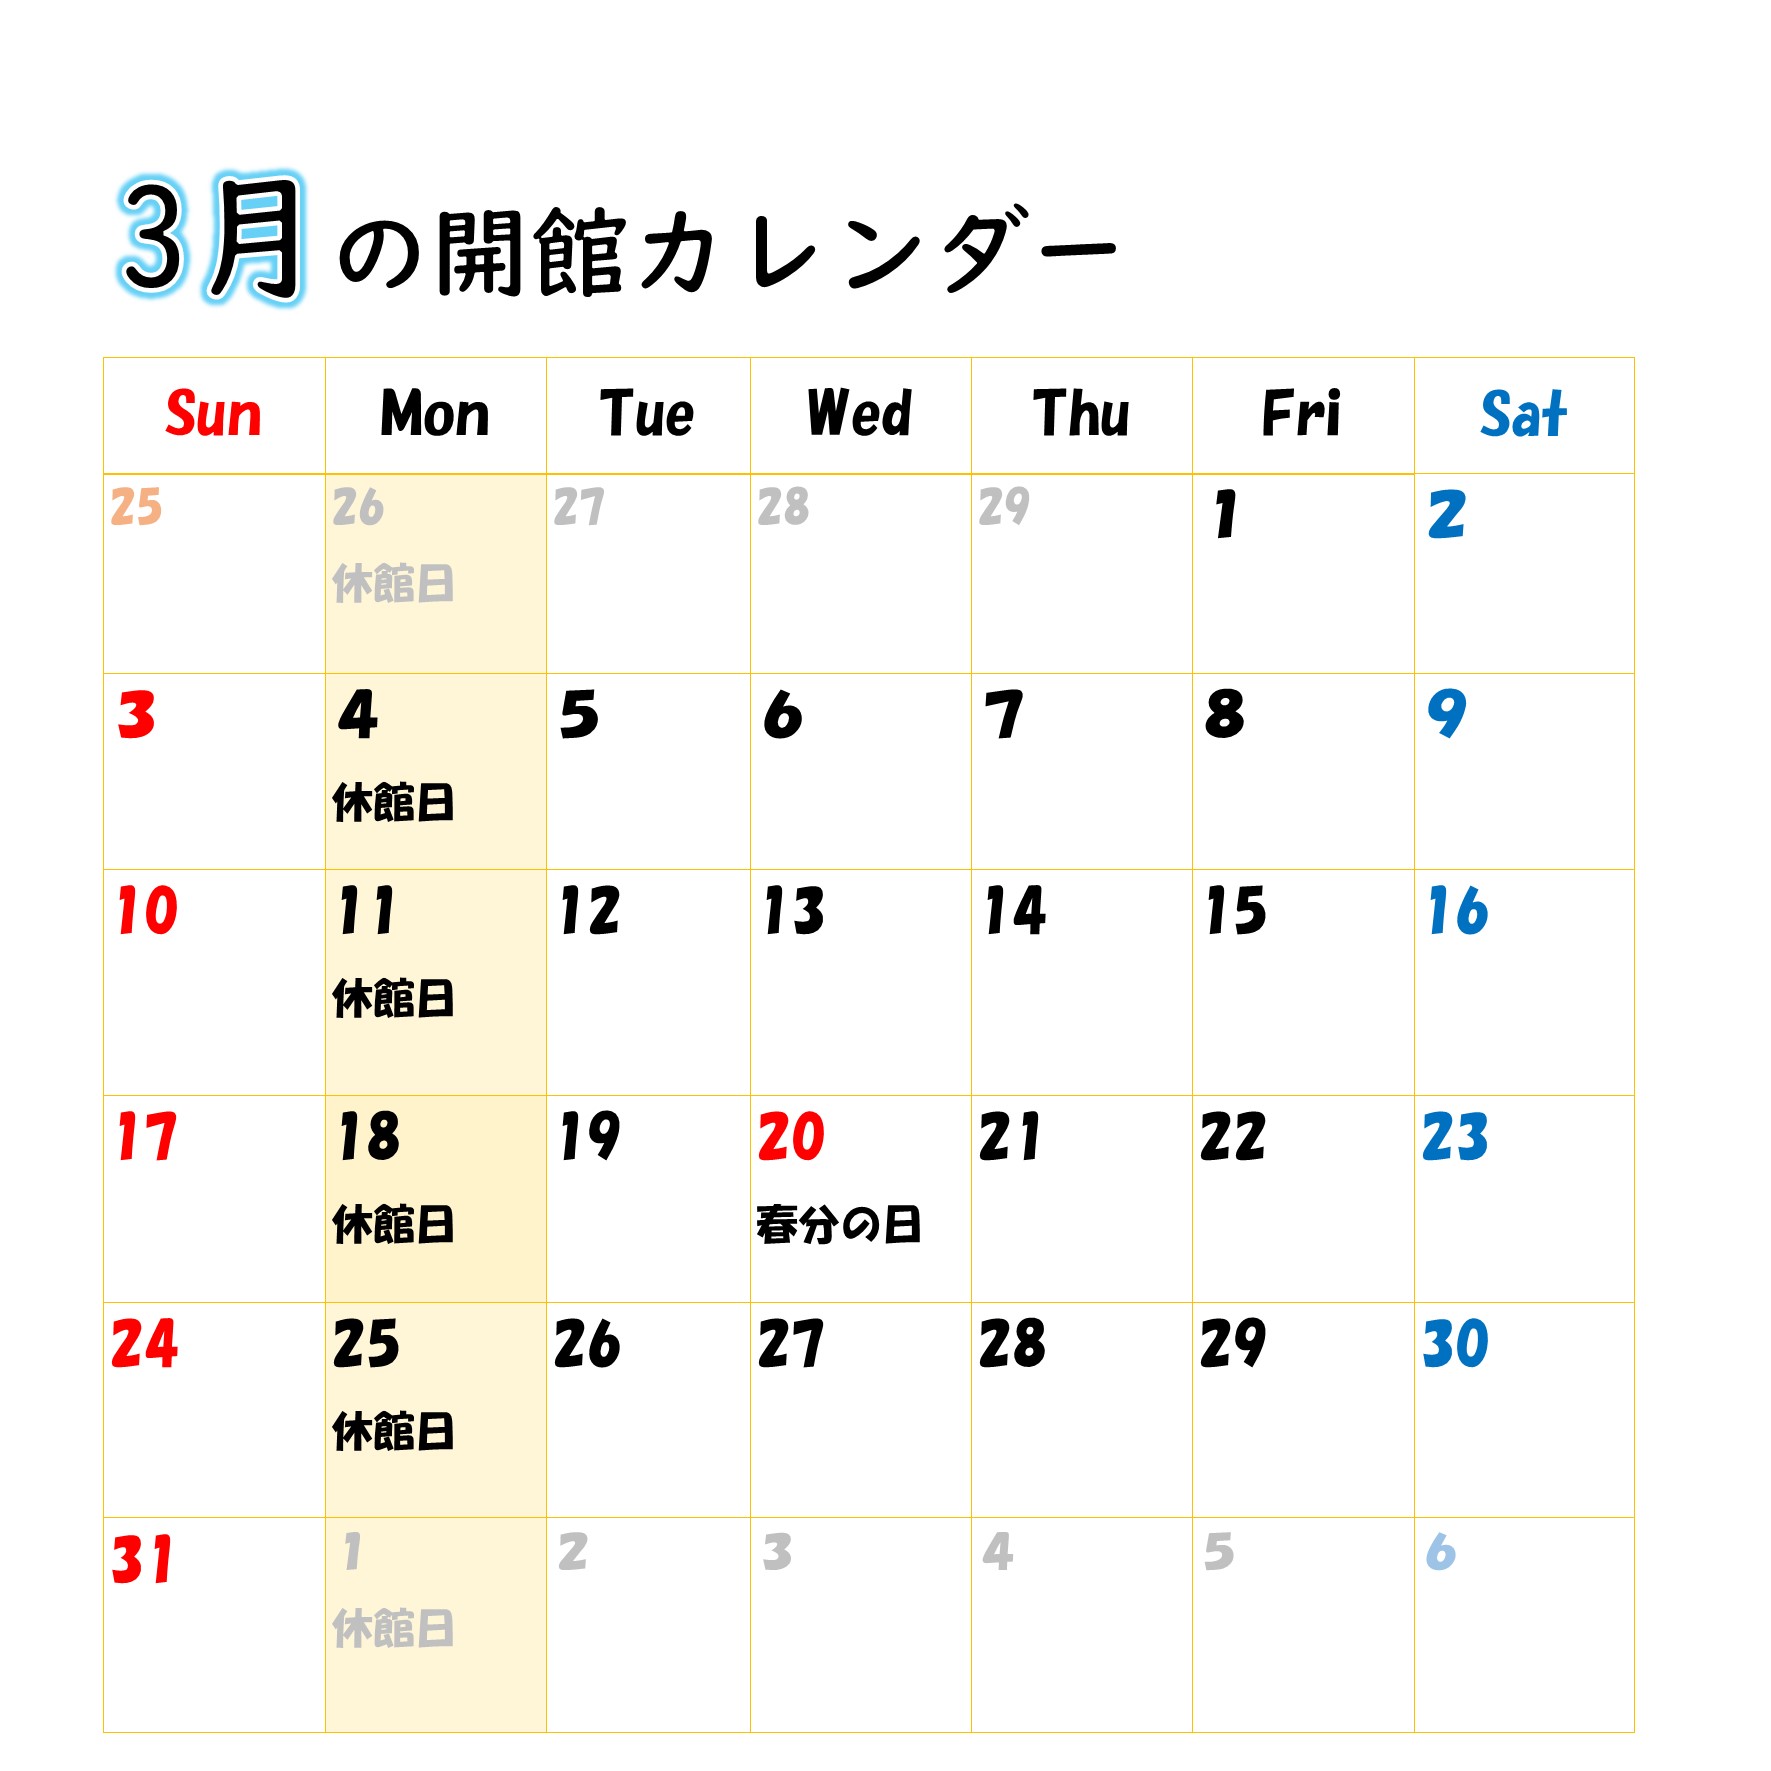 伊藤公資料館開館カレンダー（3月）